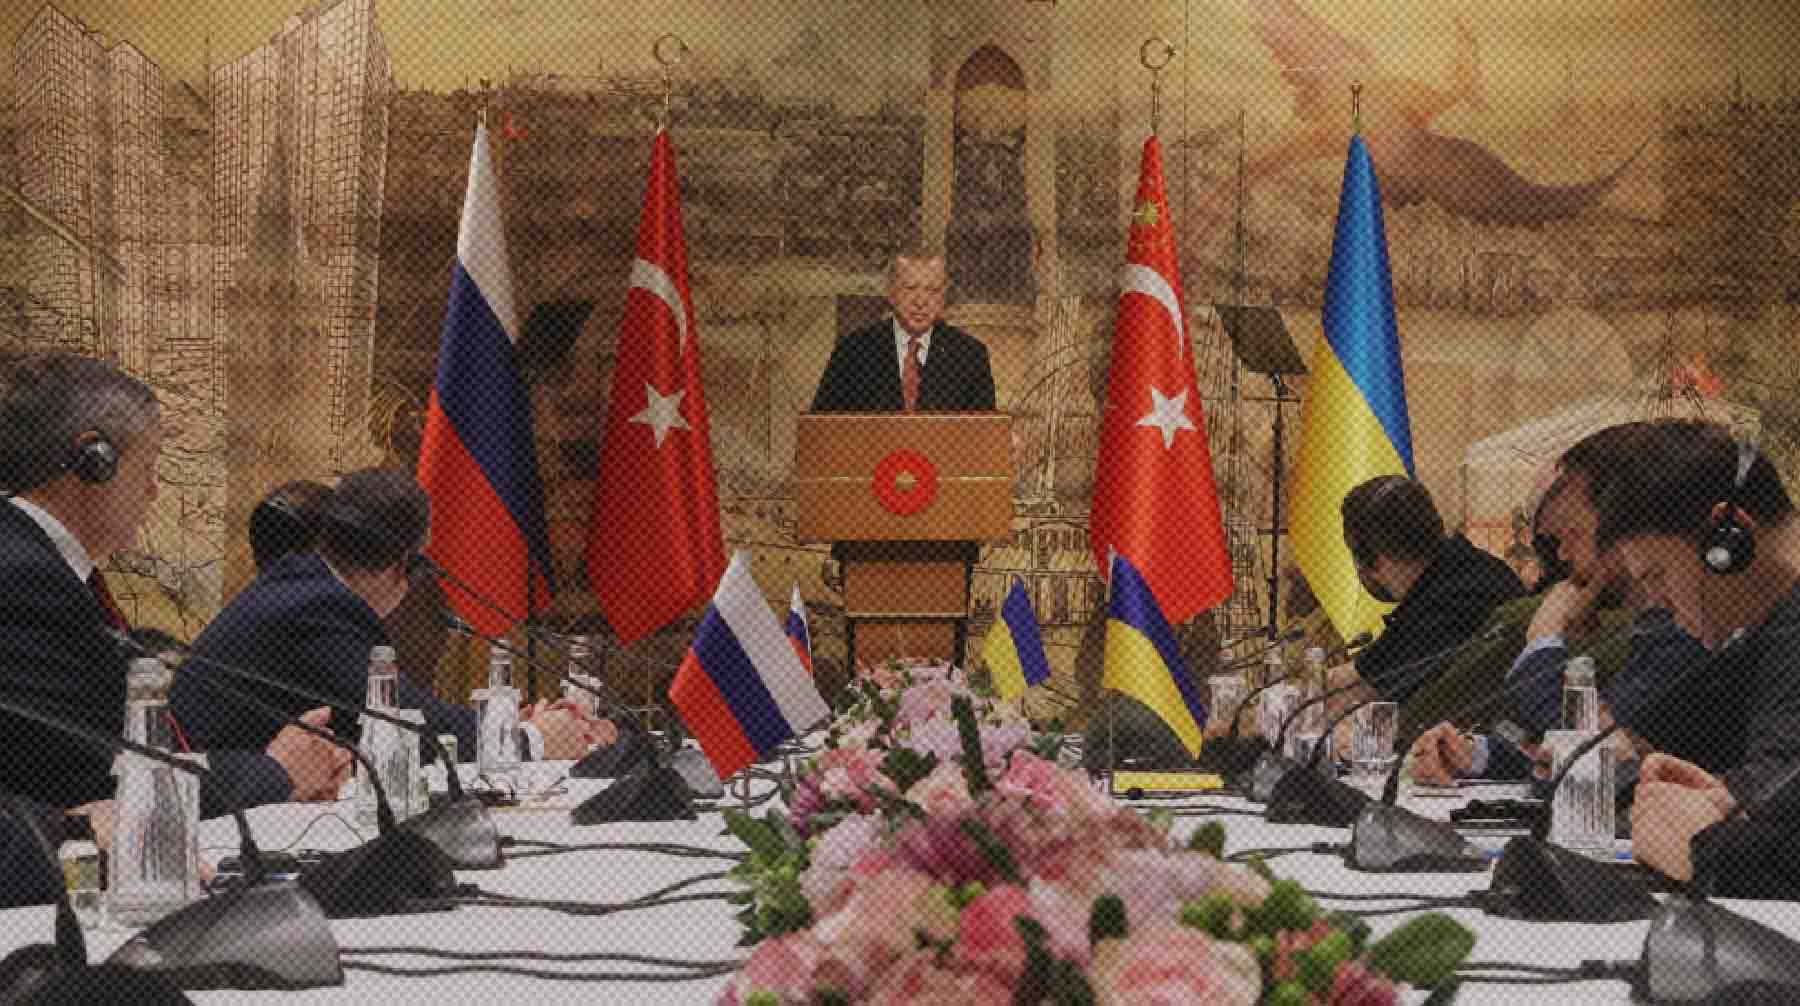 Перед началом встречи российский бизнесмен побеседовал с президентом Турции Реджеп Тайип Эрдоган выступает на российско-украинских переговорах во дворце Долмабахче в Стамбуле.